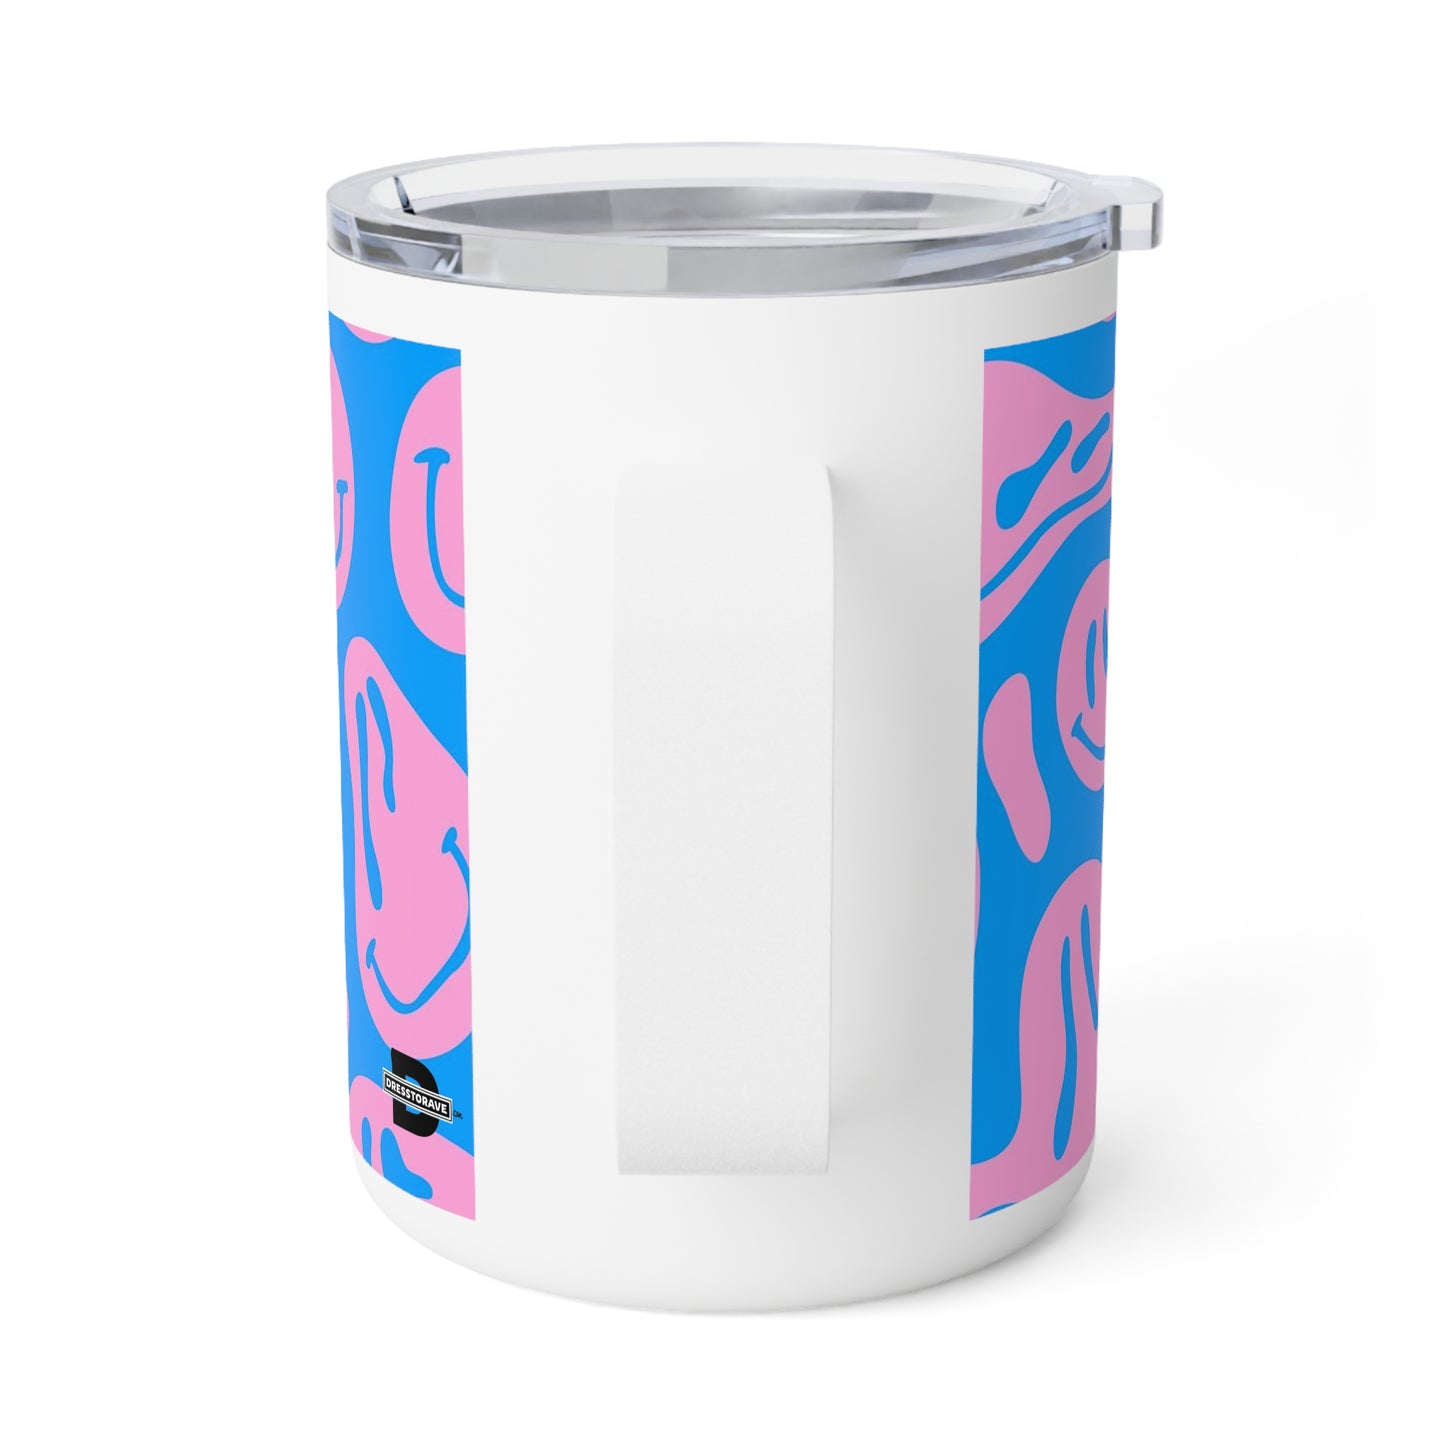 Melting Smileys | Insulated Coffee Mug, 10oz